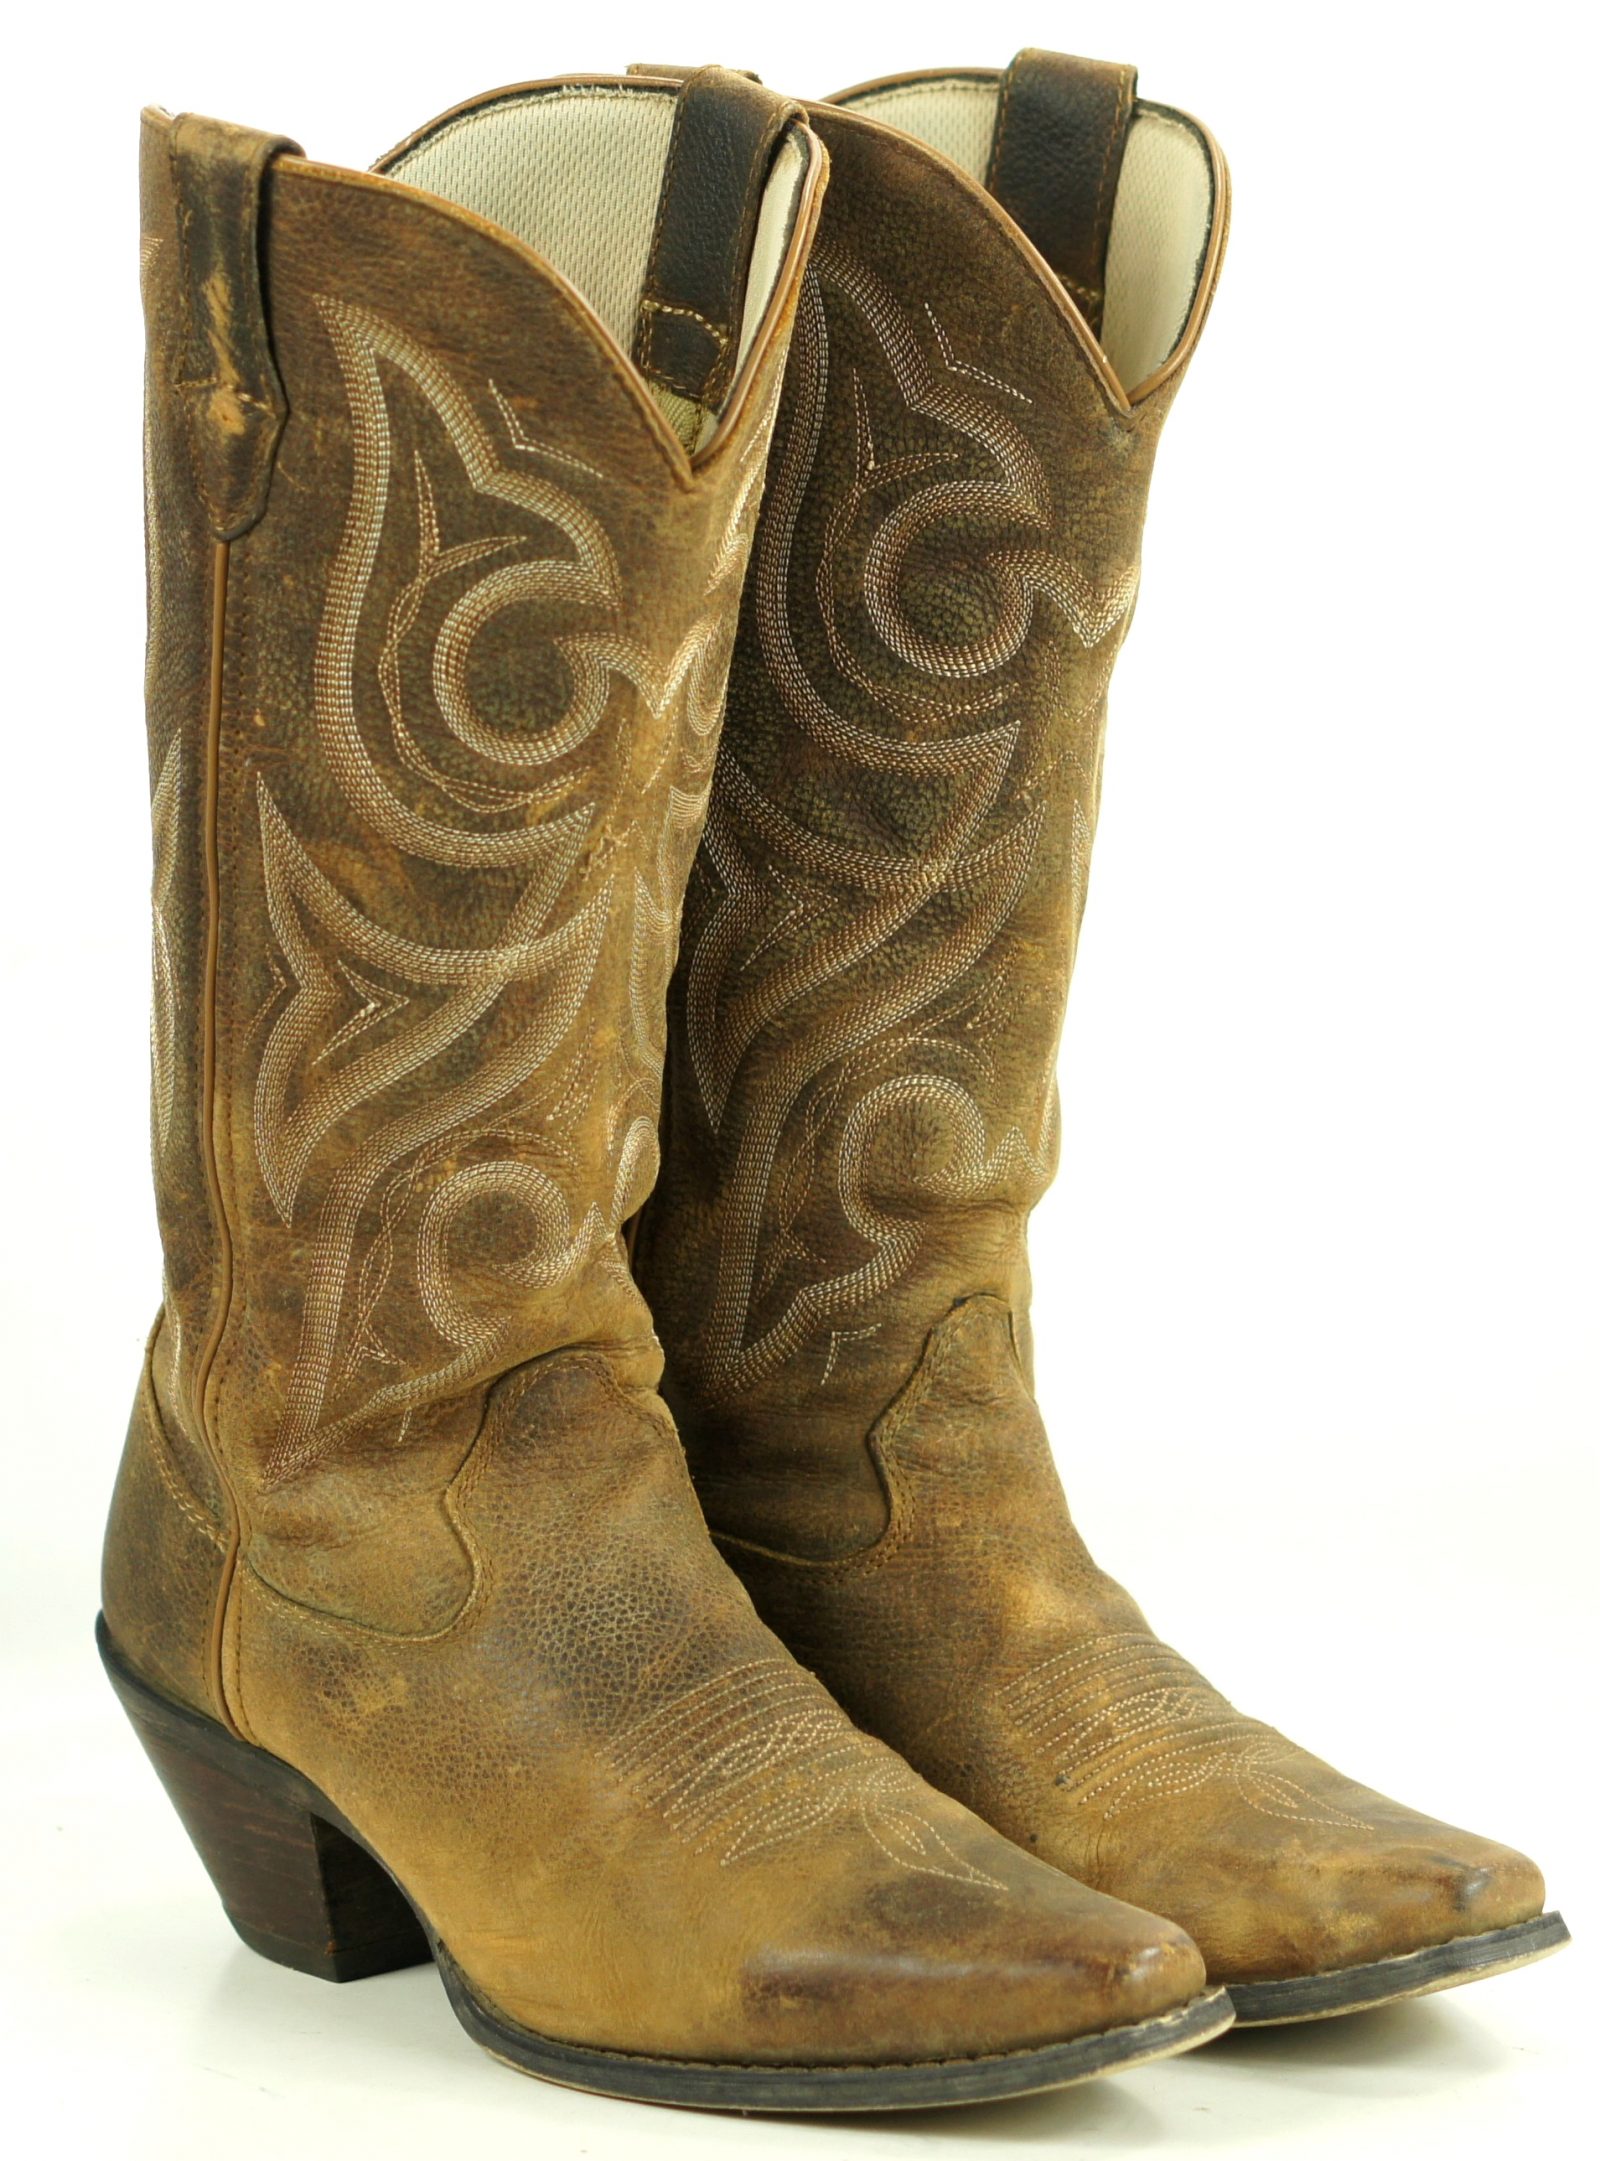 Durango Crush Jealousy Ruffout Suede Western Cowboy Boots $170 RD3514 Women